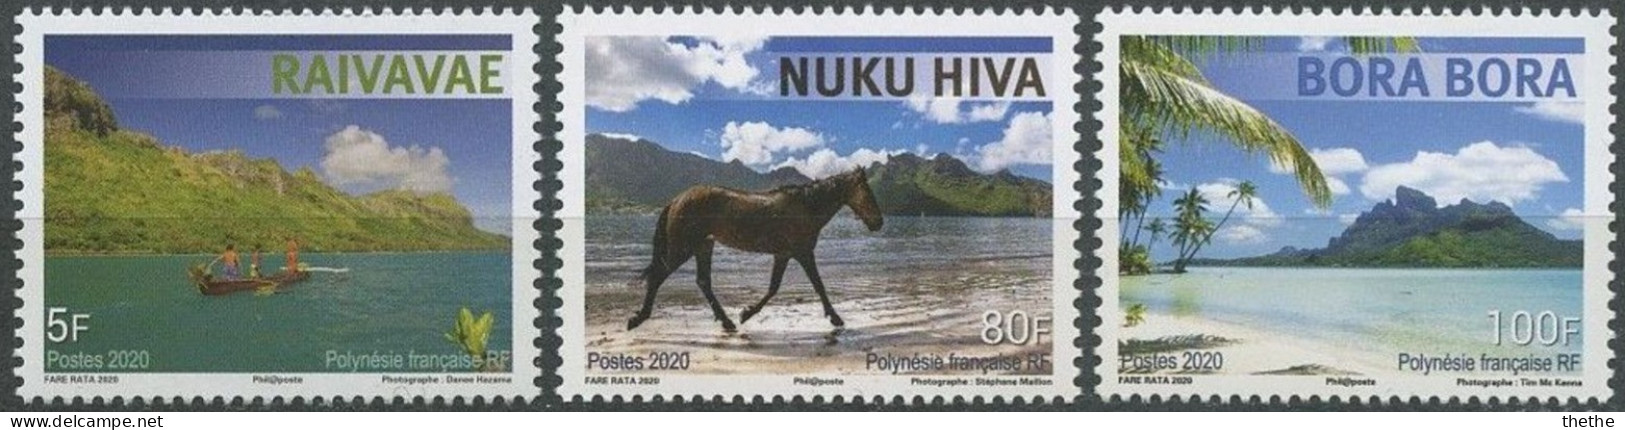 POLYNESIE - Canoë-kayak Au Large De Raivavae - Cheval Sur La Plage, île De Nuku Hiva - Vue De Bora Bora - Unused Stamps